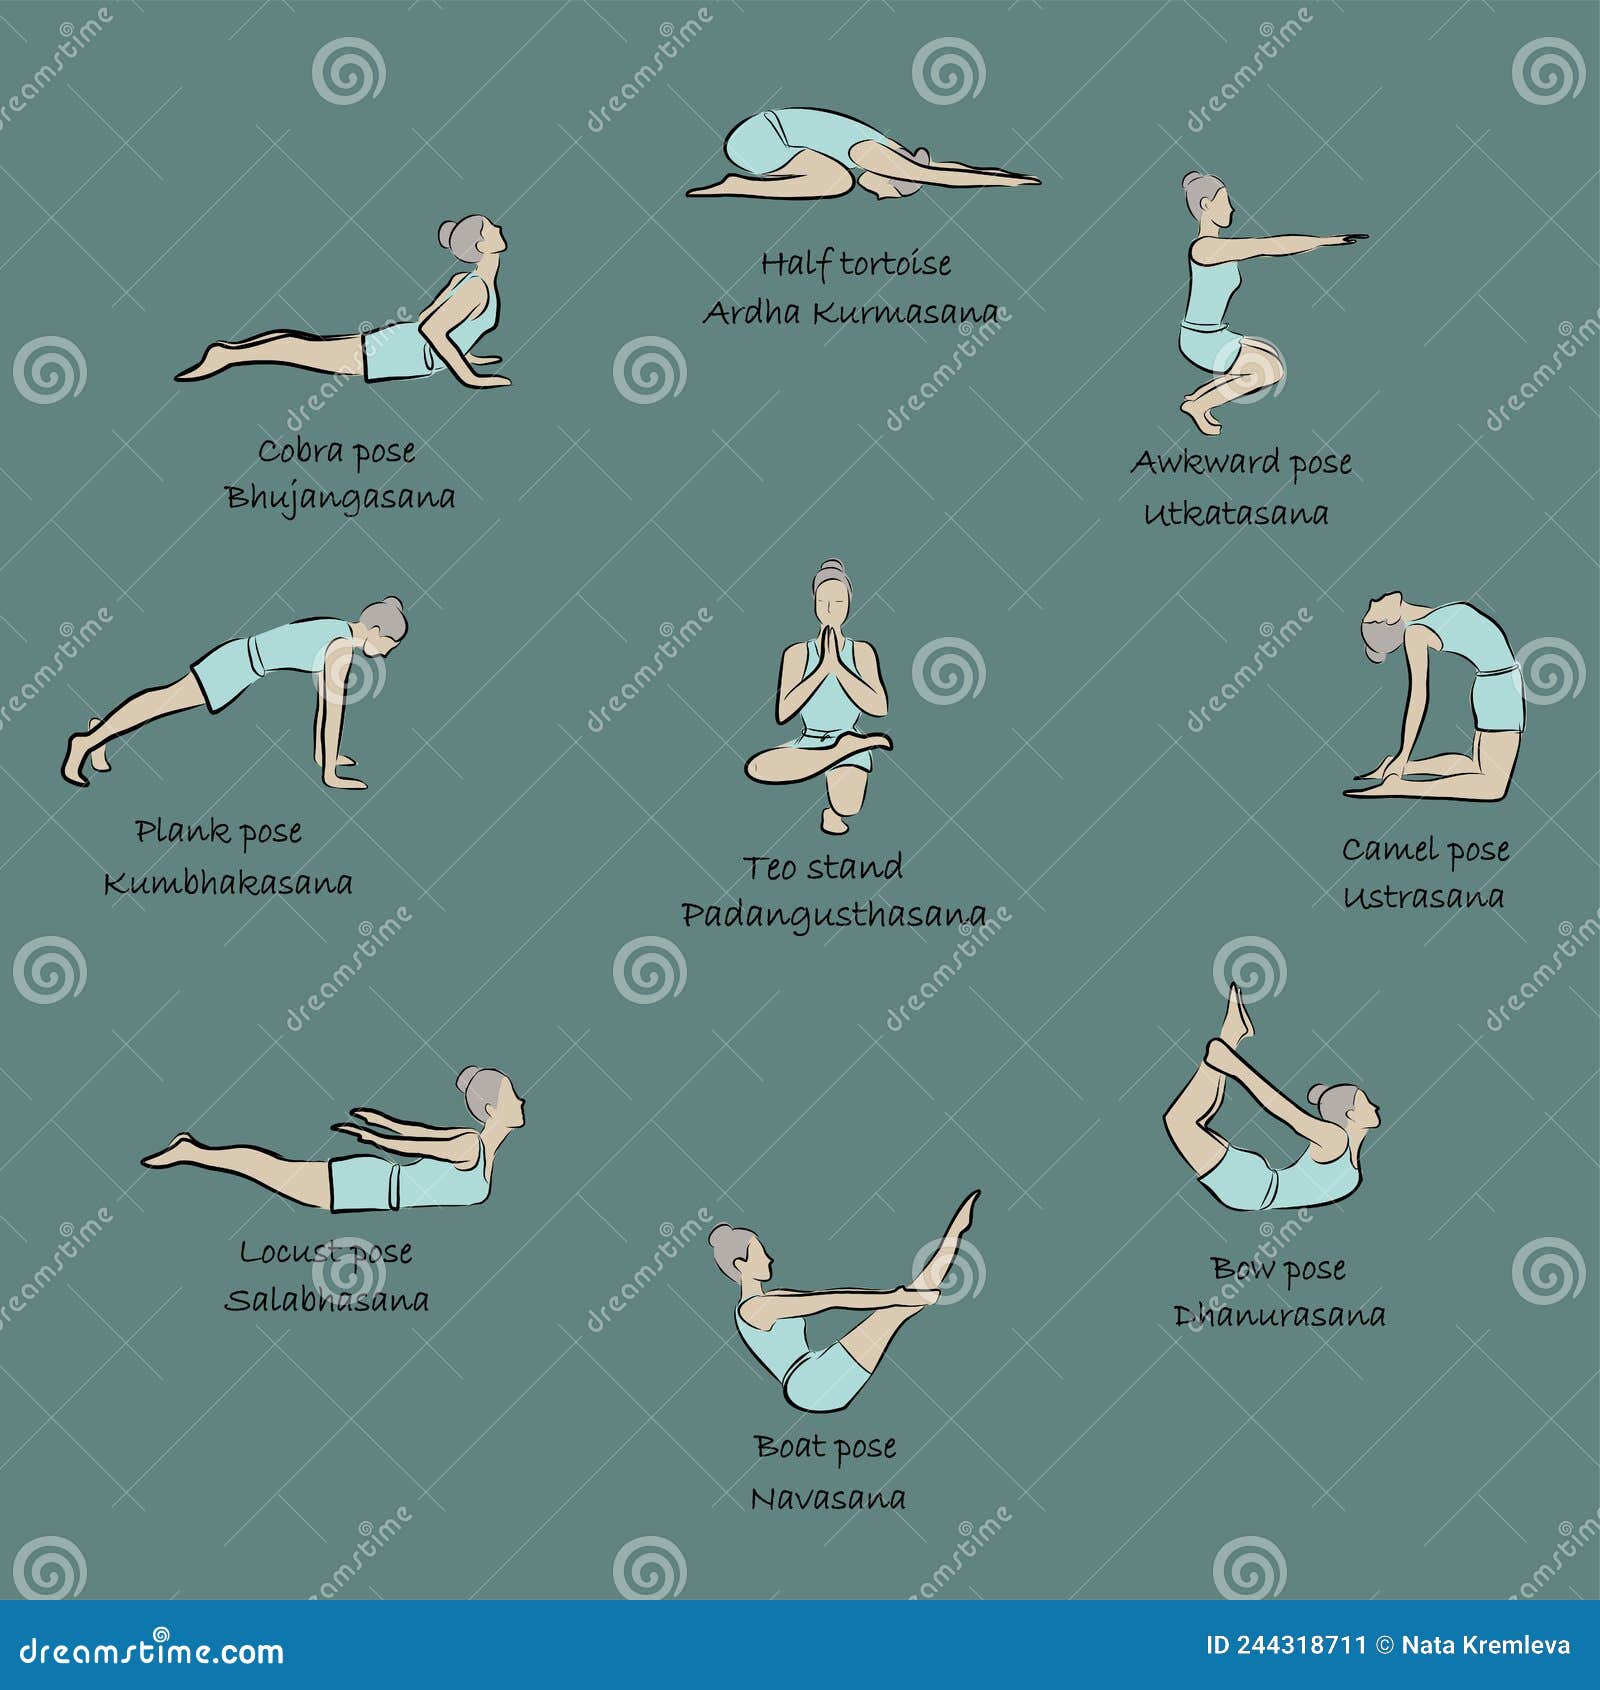 Yoga, Sports, Gymnastics. Human Body Health. Healthy Lifestyle